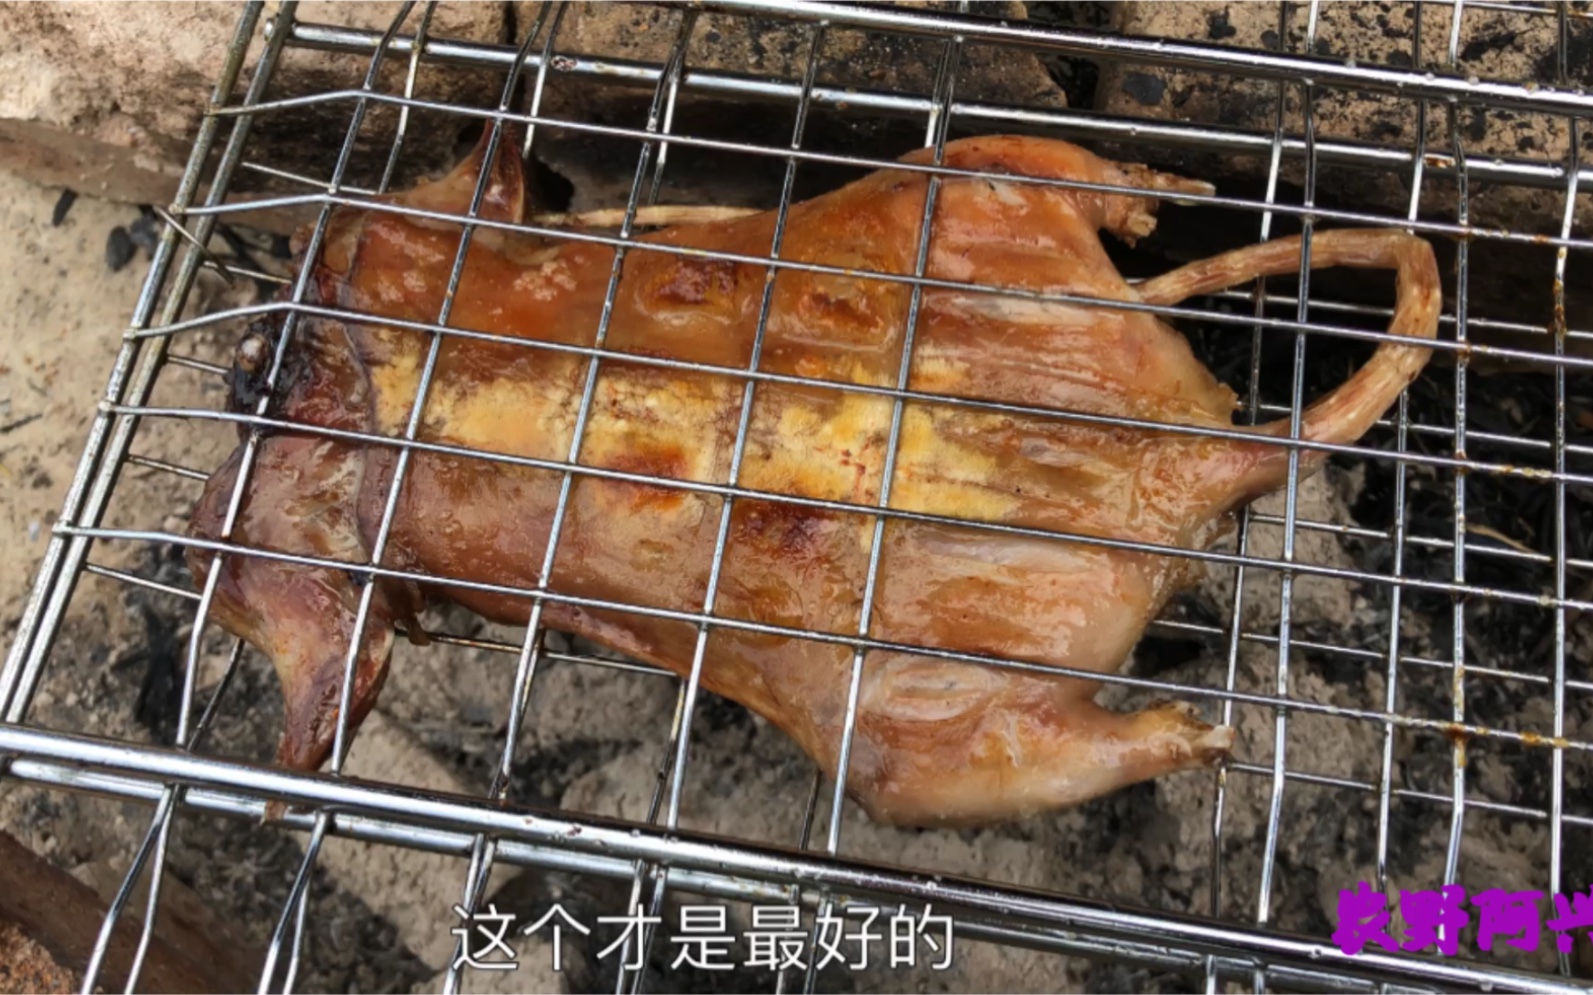 【福建烤老鼠】《乡土》 20111201 福建三明宁化县“捕鼠村”的怪美食_哔哩哔哩_bilibili